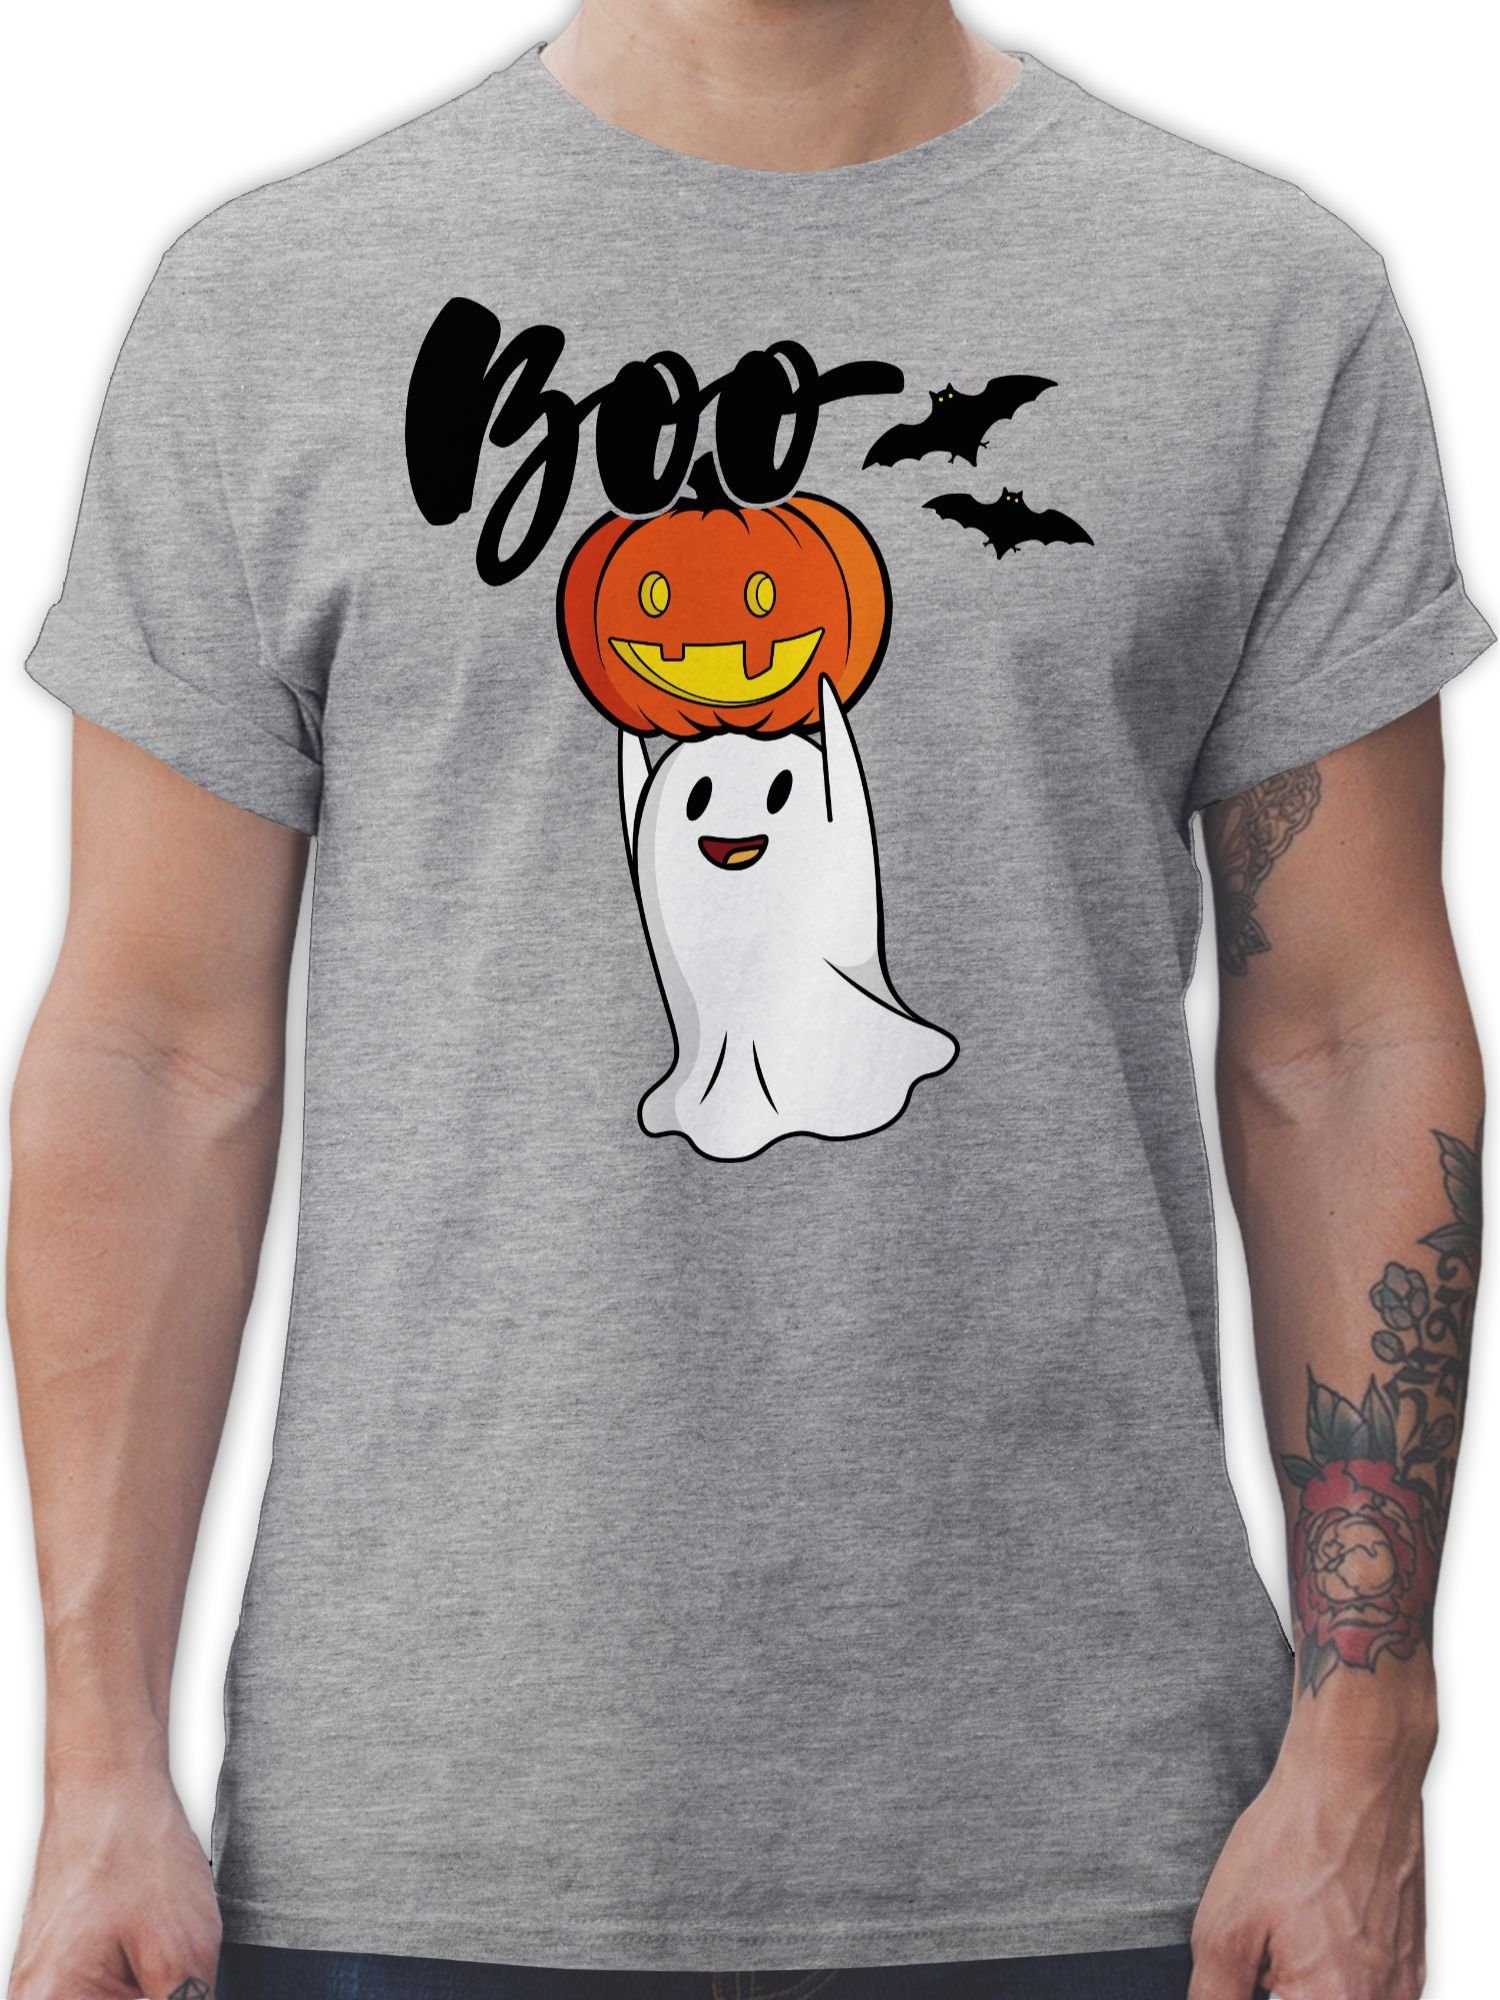 Shirtracer T-Shirt Boo Geist Kürbis Gespenst Gespenster Geister Halloween Kostüme Herren 1 Grau meliert